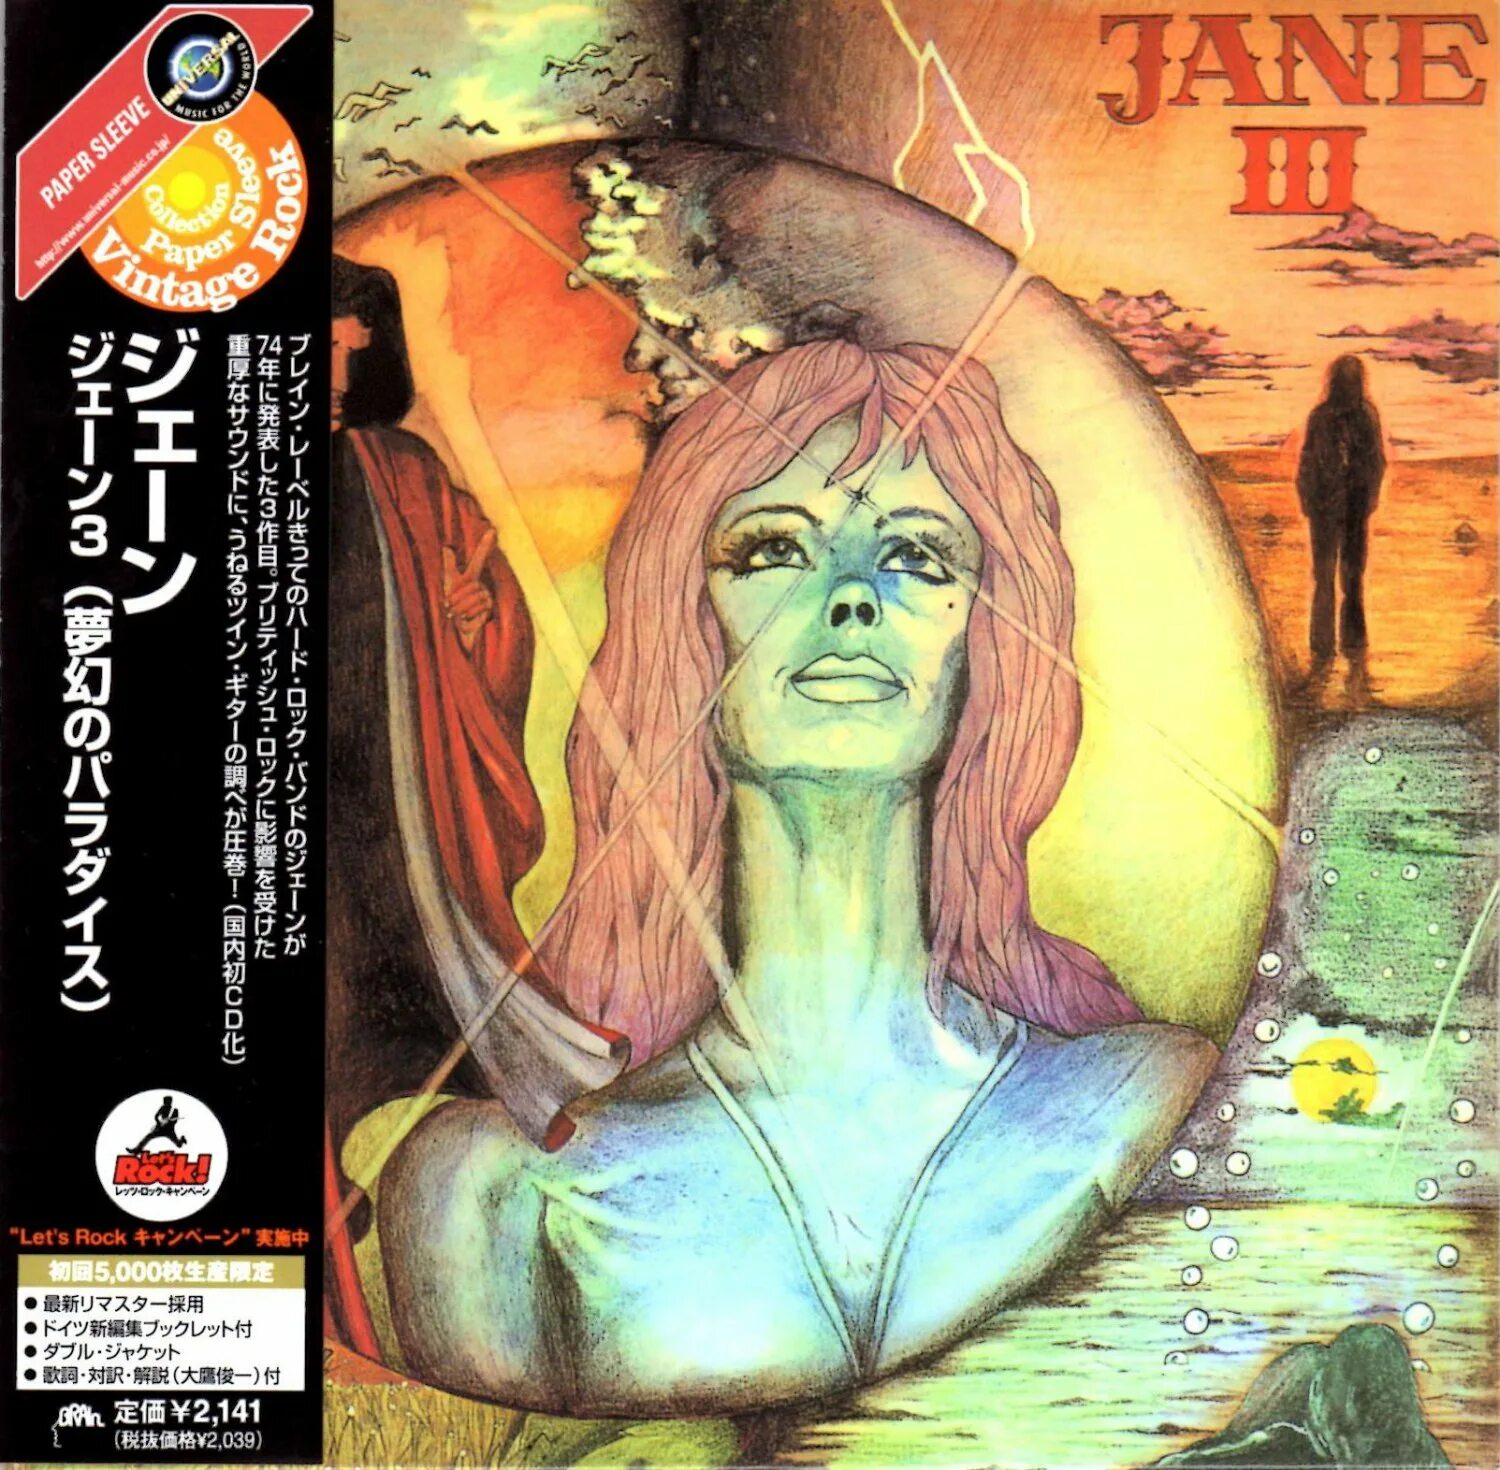 Jane more s. Jane III. Jane "3 (CD)". "John Jane III". Klaus Hess' mother Jane.